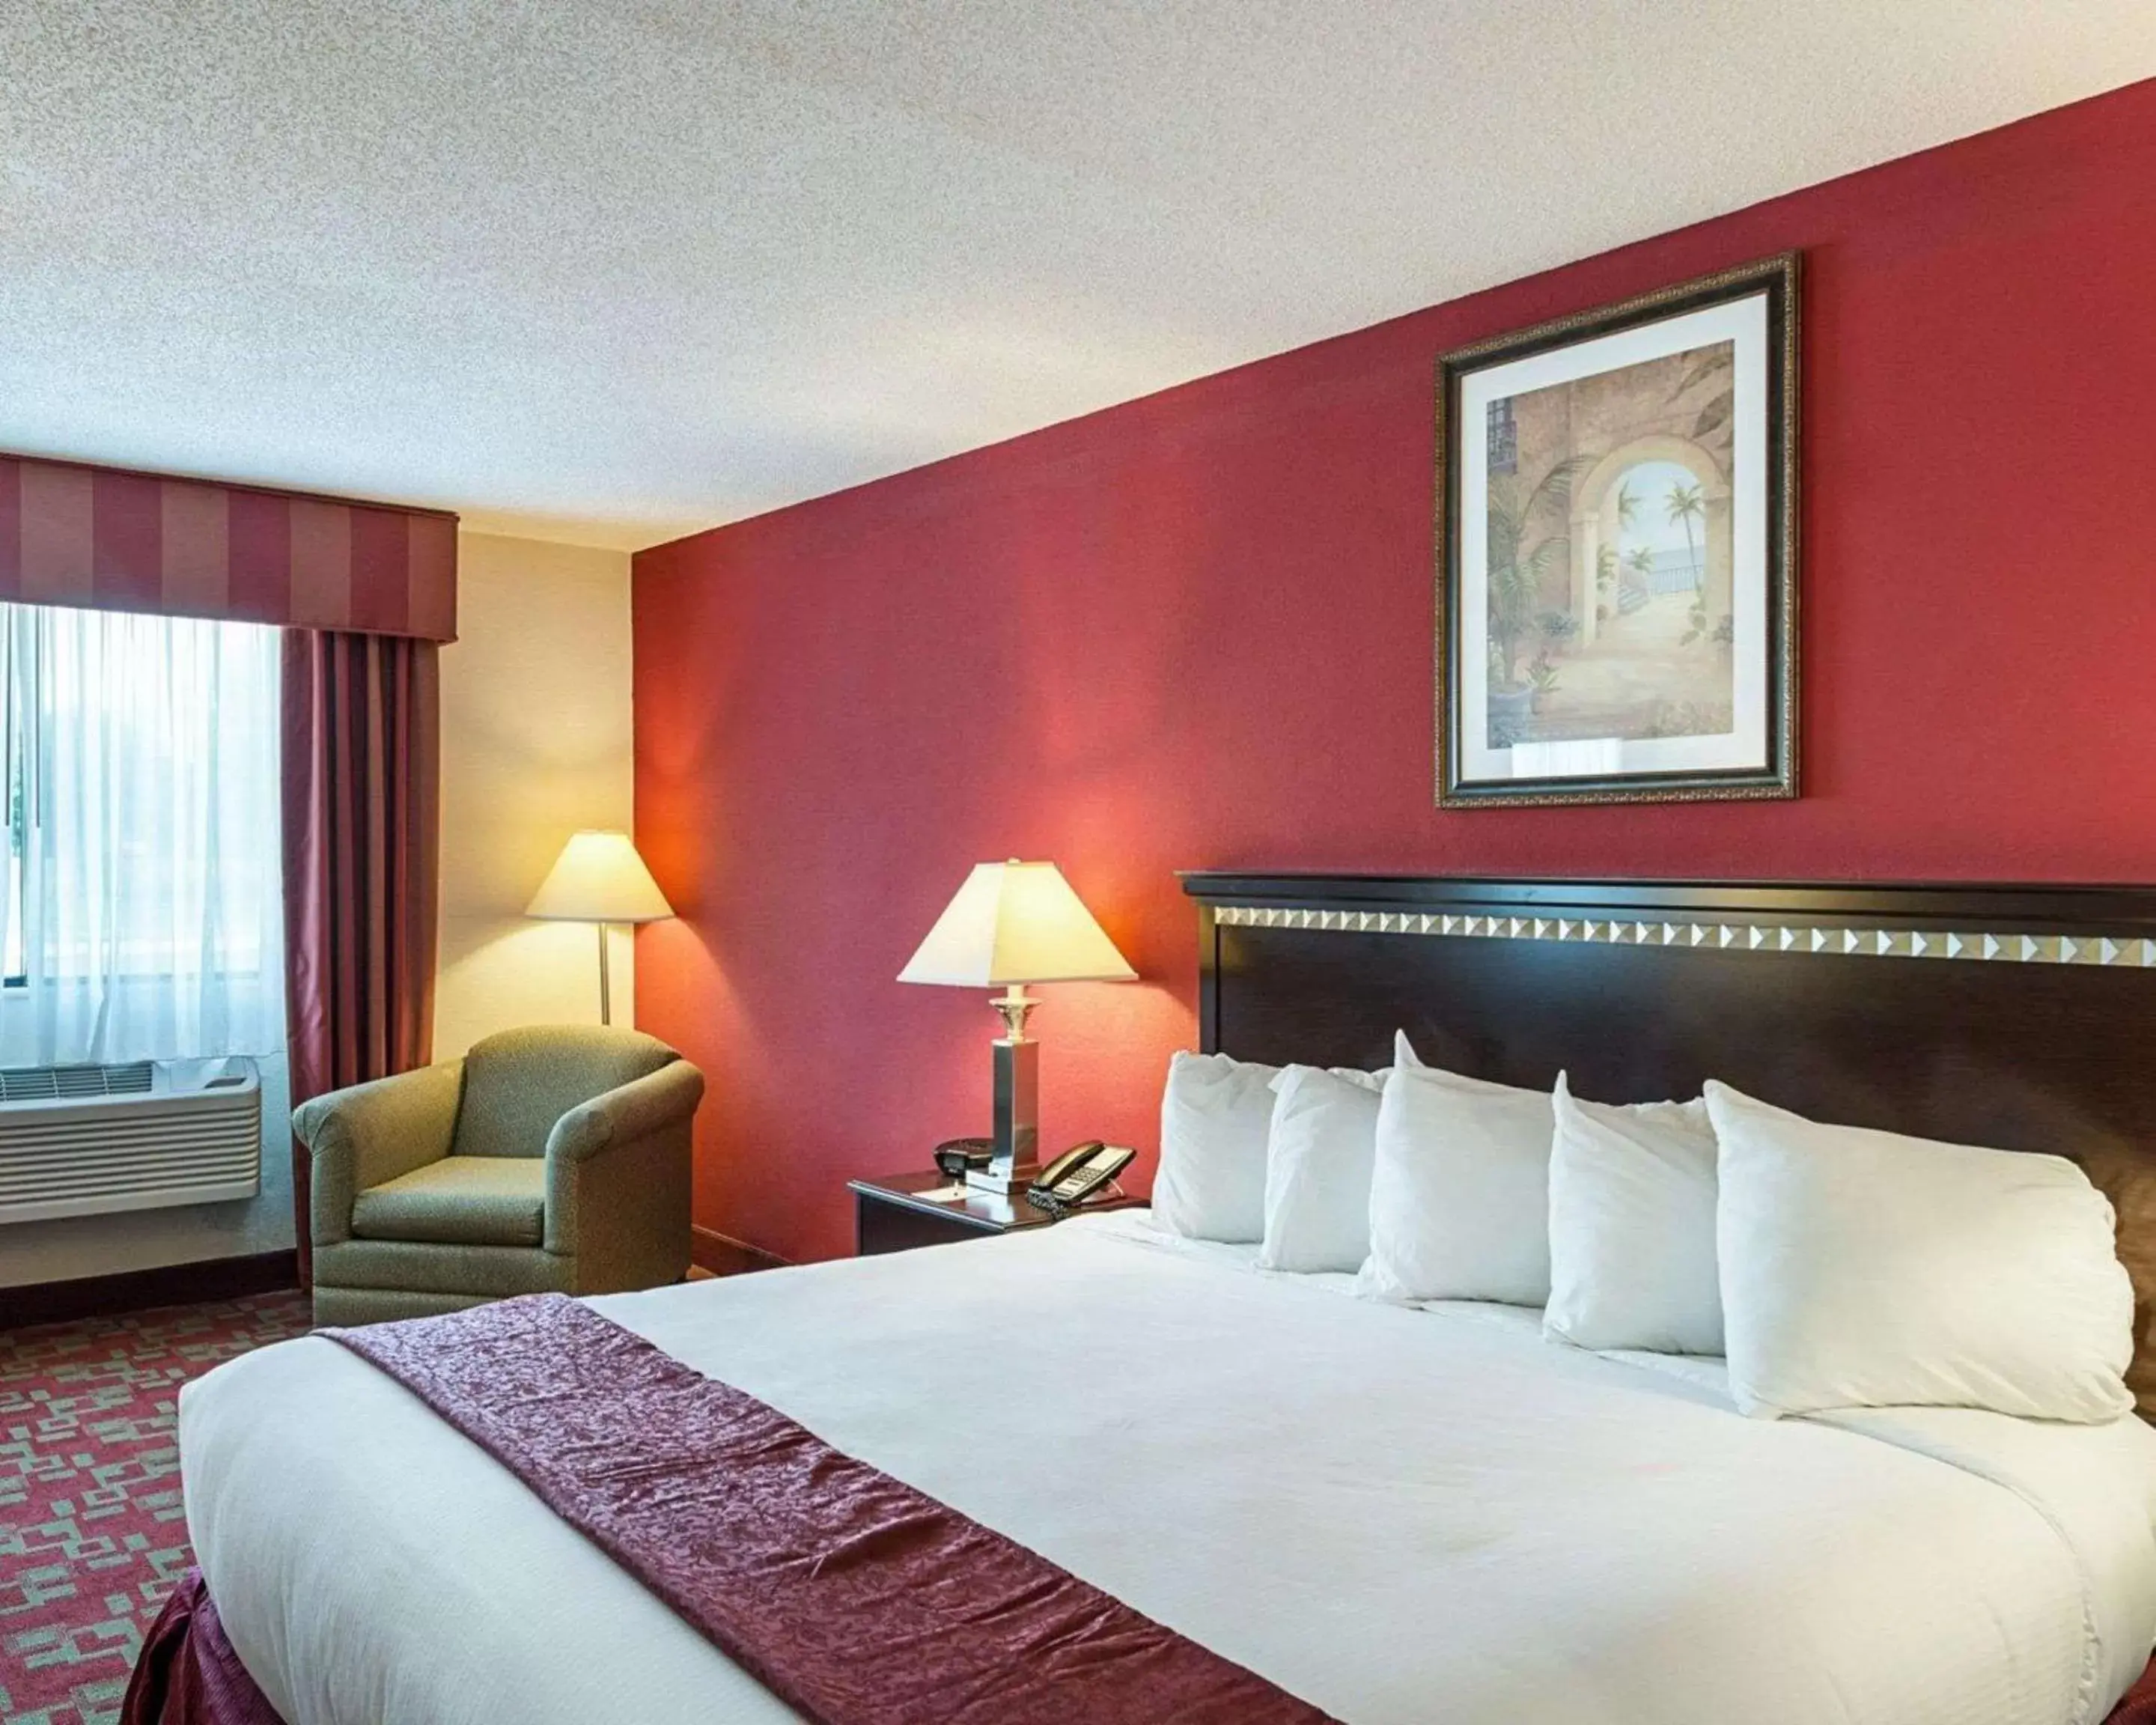 Bedroom, Bed in Quality Inn & Suites - Gettysburg